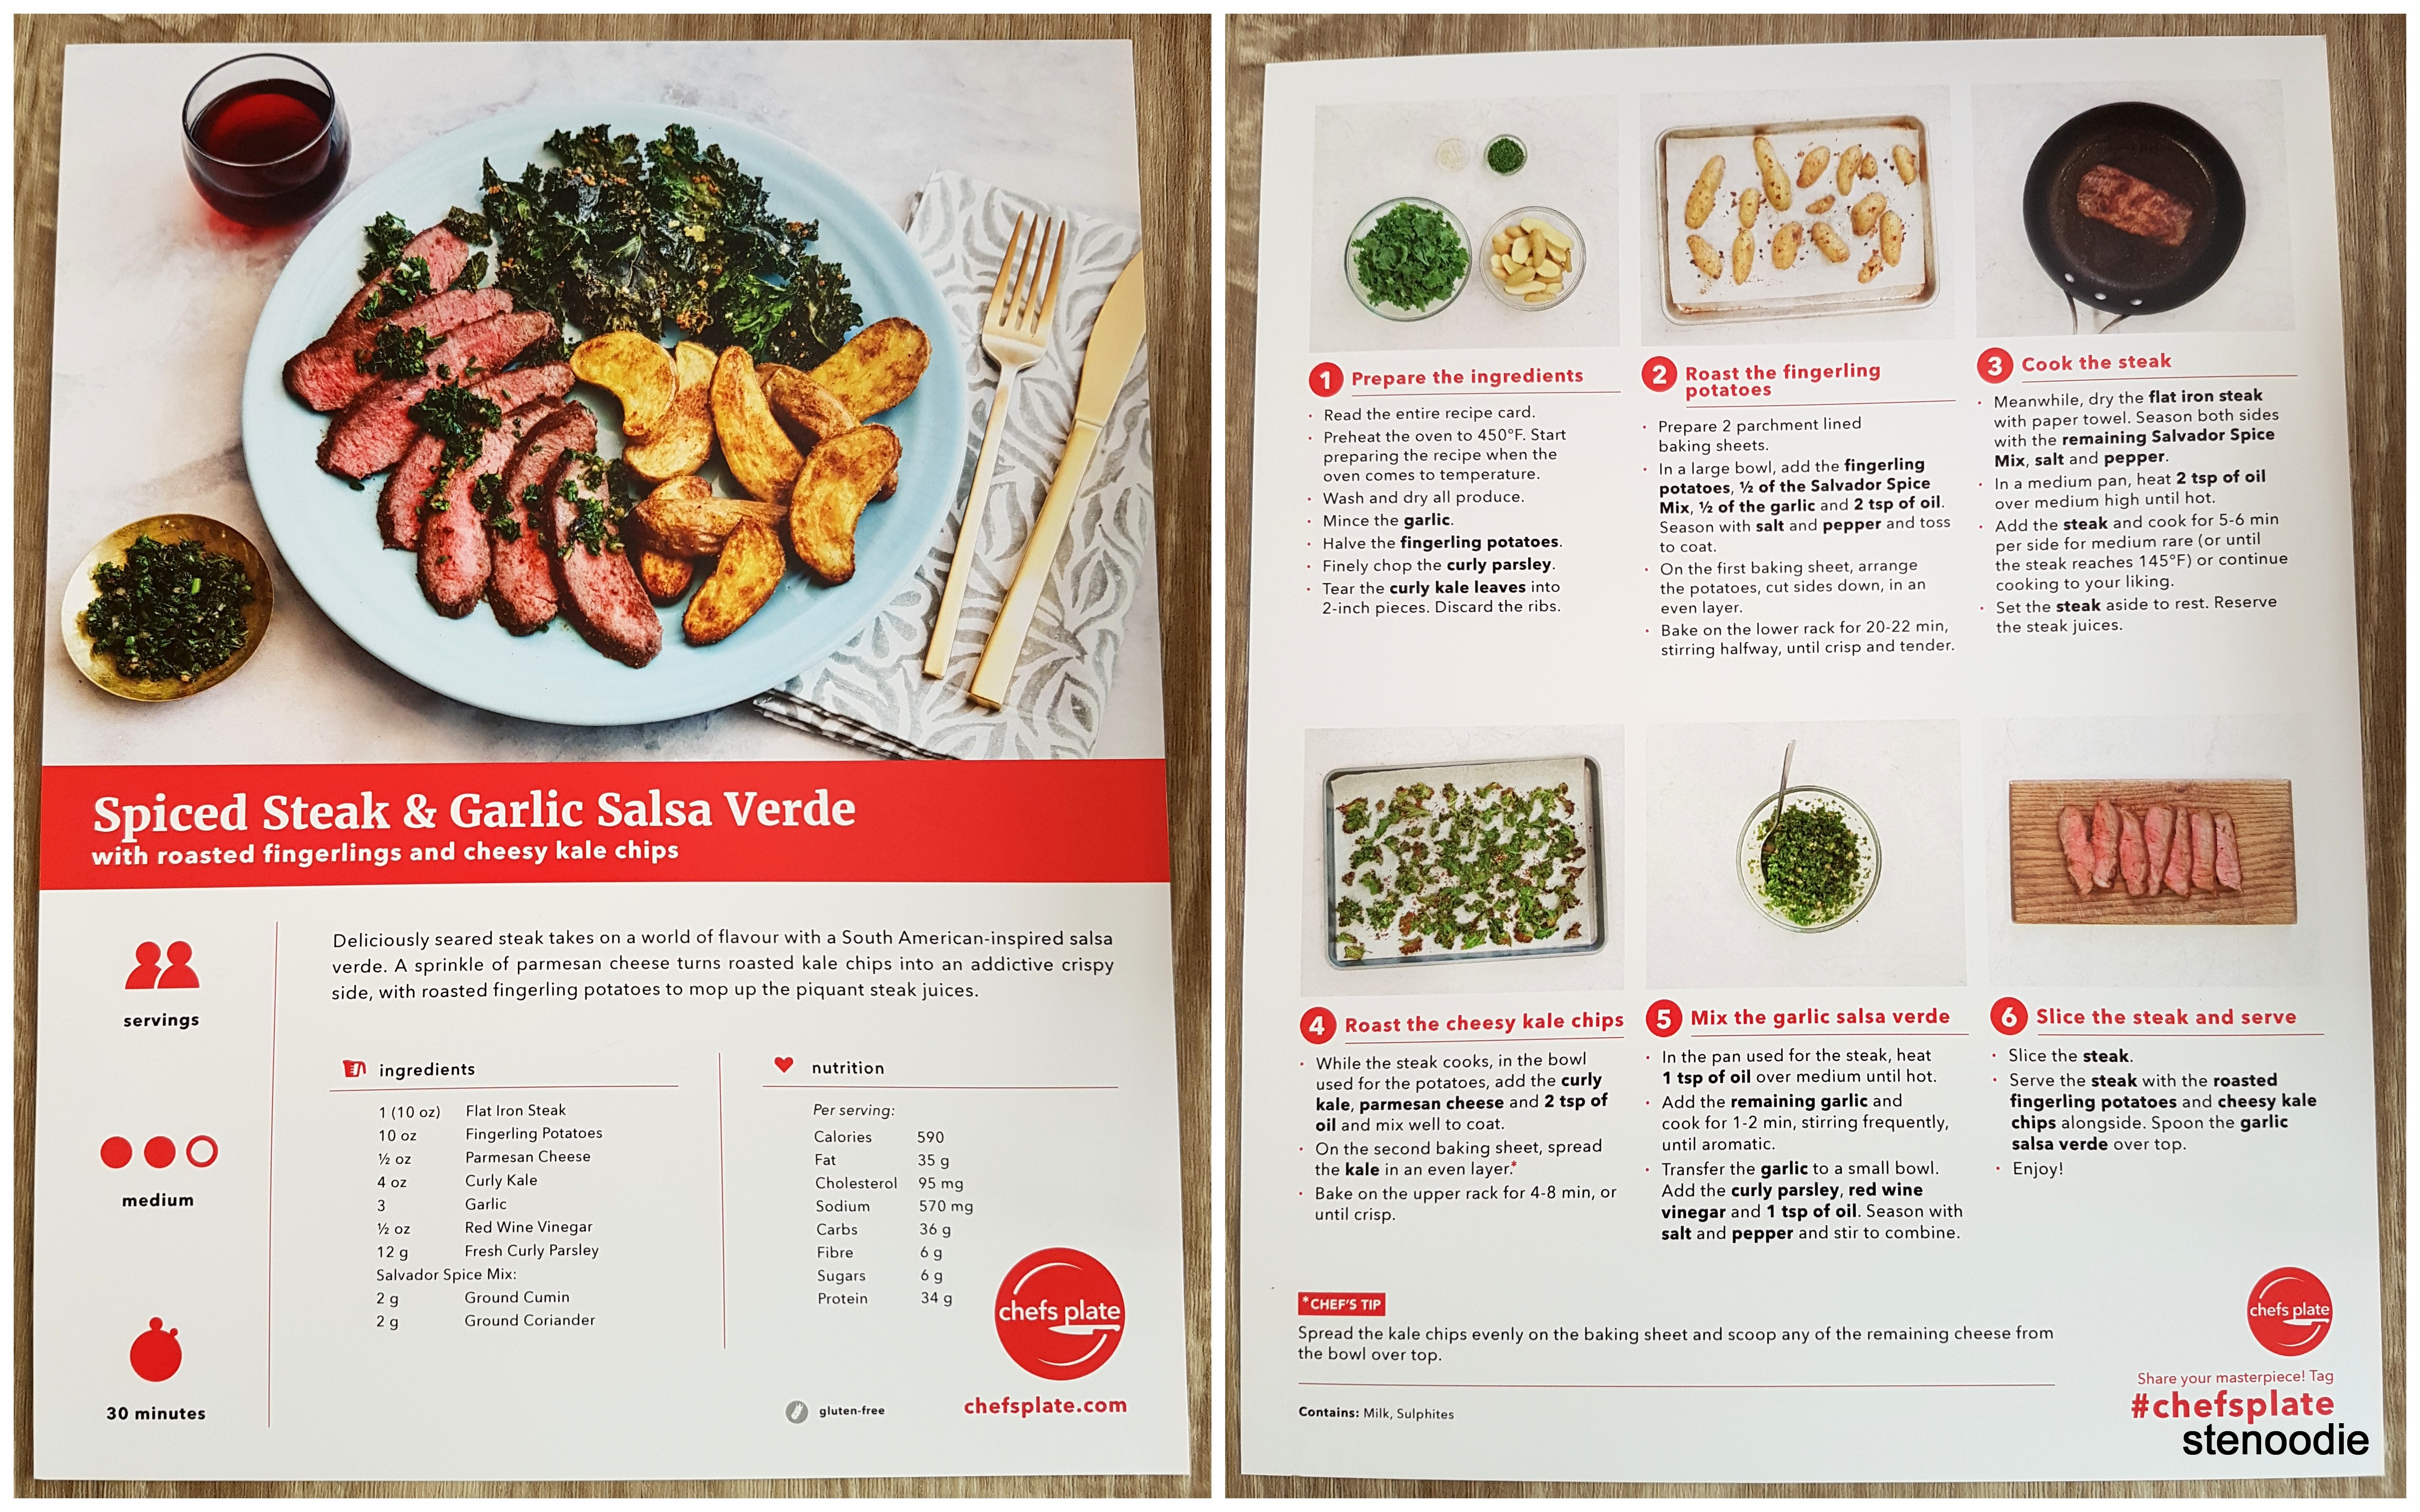 Spiced Steak & Garlic Salsa Verde recipe card